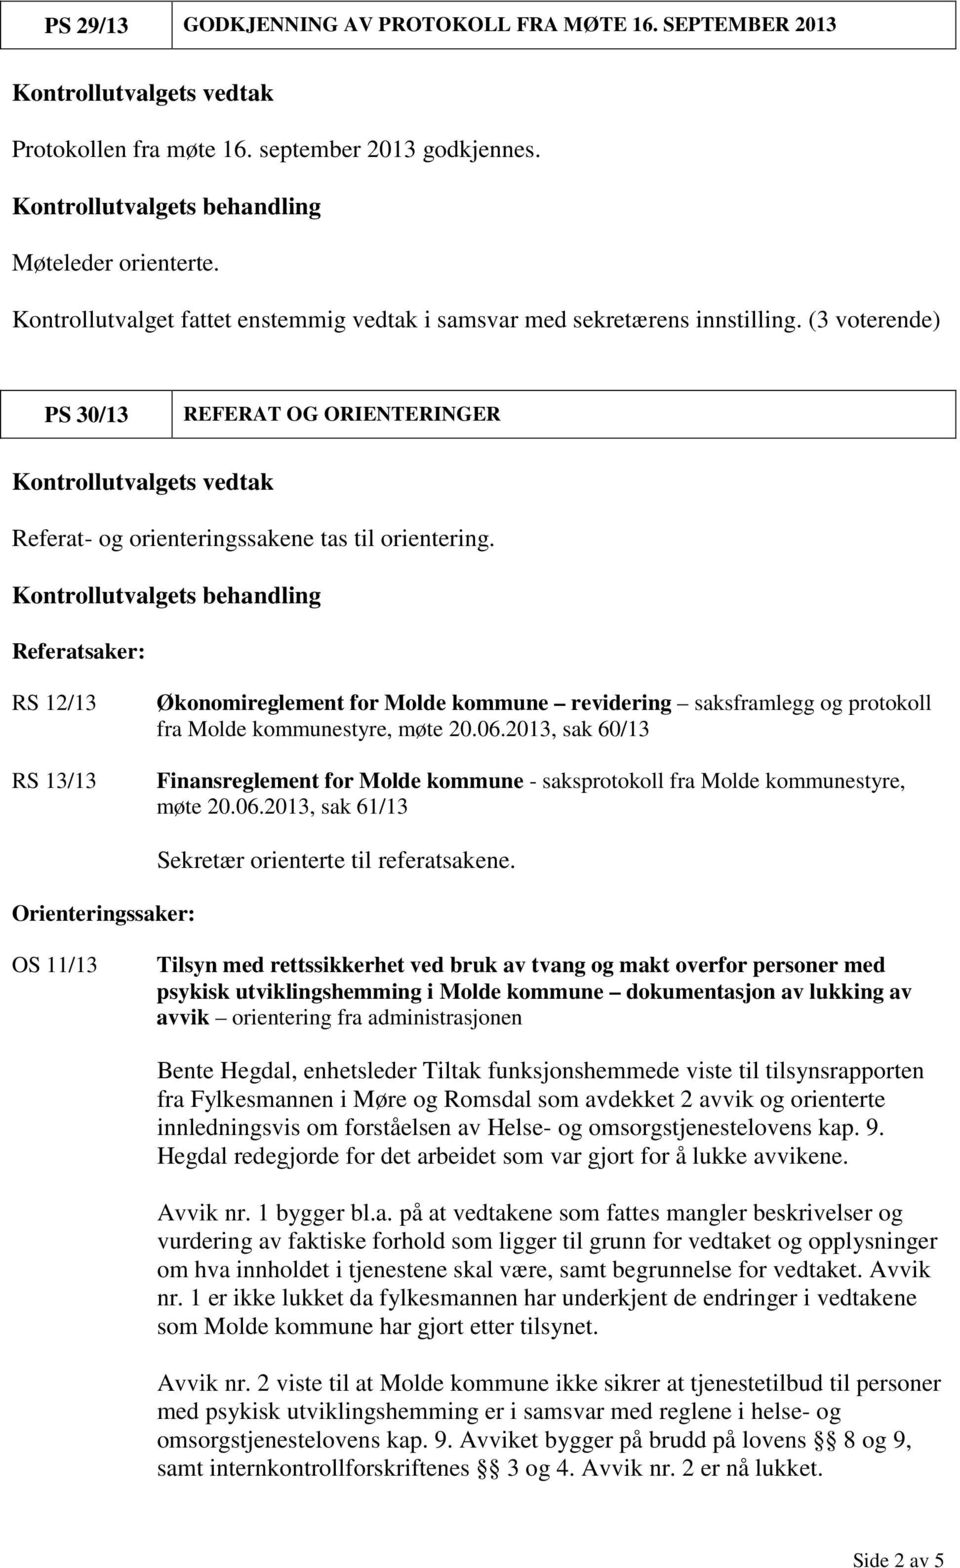 Referatsaker: RS 12/13 RS 13/13 Økonomireglement for Molde kommune revidering saksframlegg og protokoll fra Molde kommunestyre, møte 20.06.